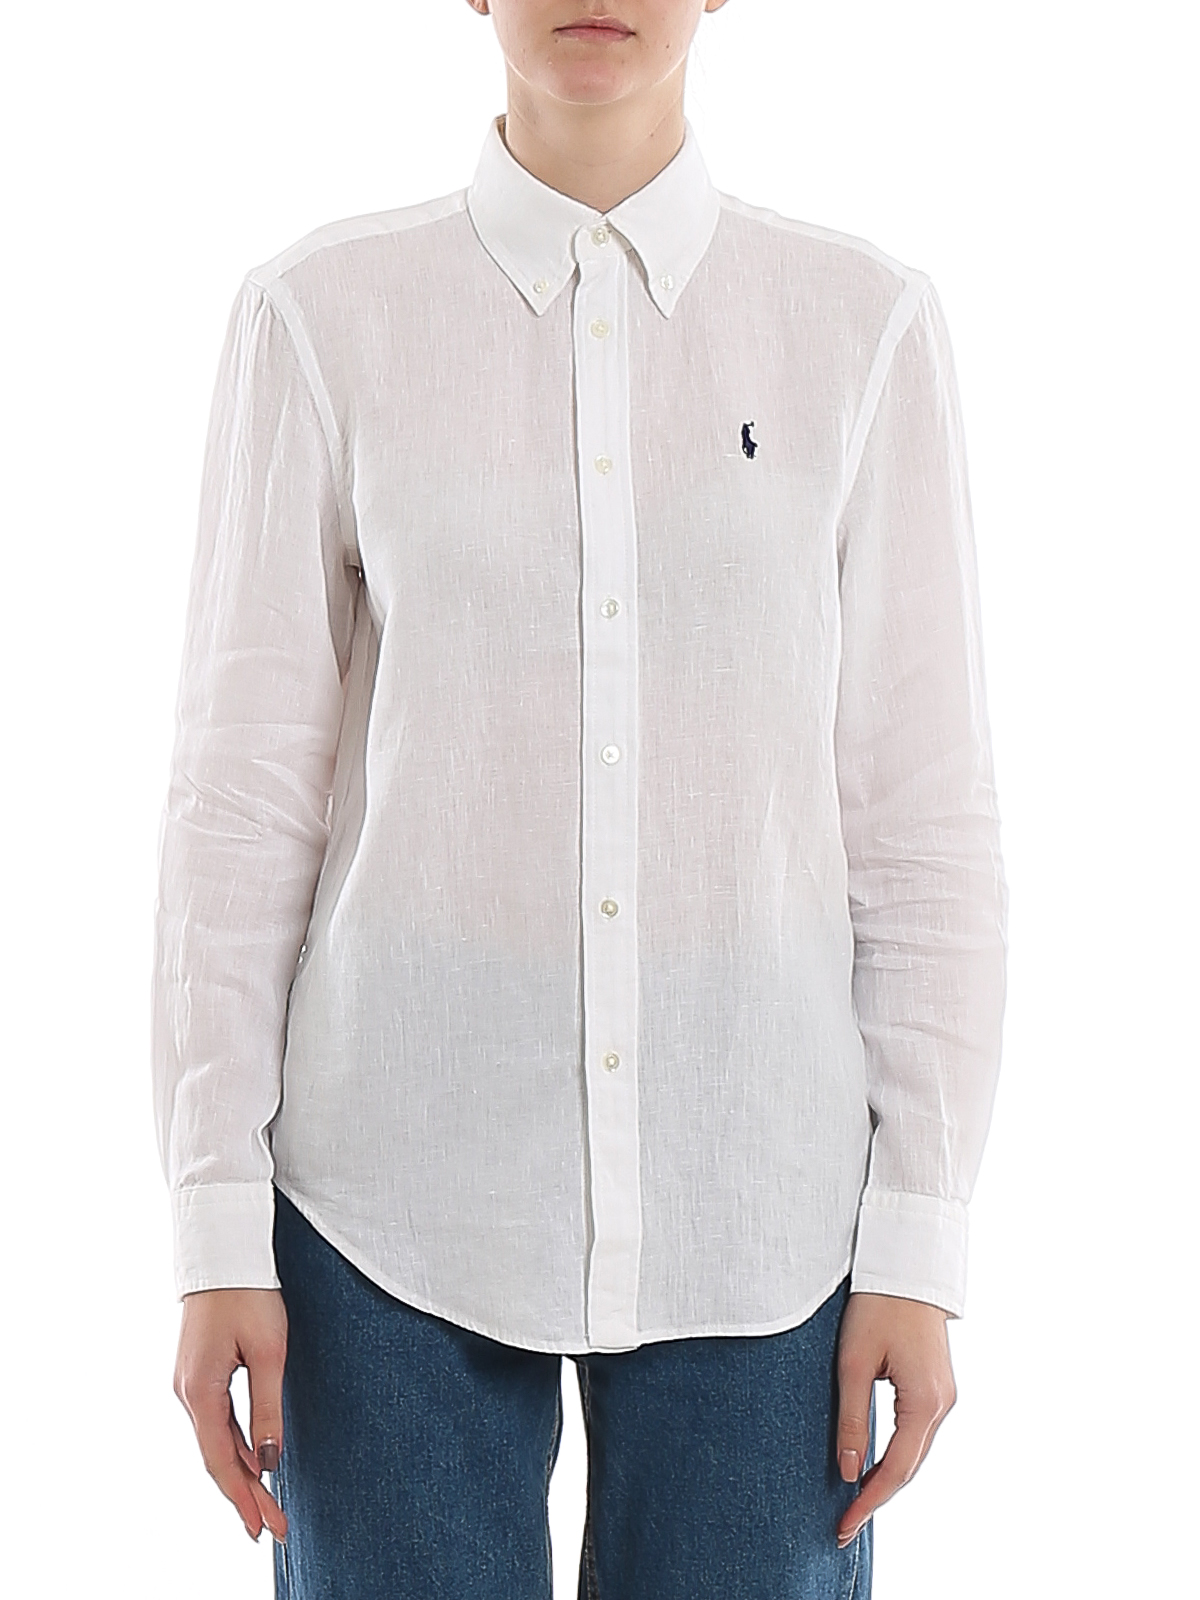 Shirts Polo Ralph Lauren - Relaxed fit logo embroidery linen shirt ...